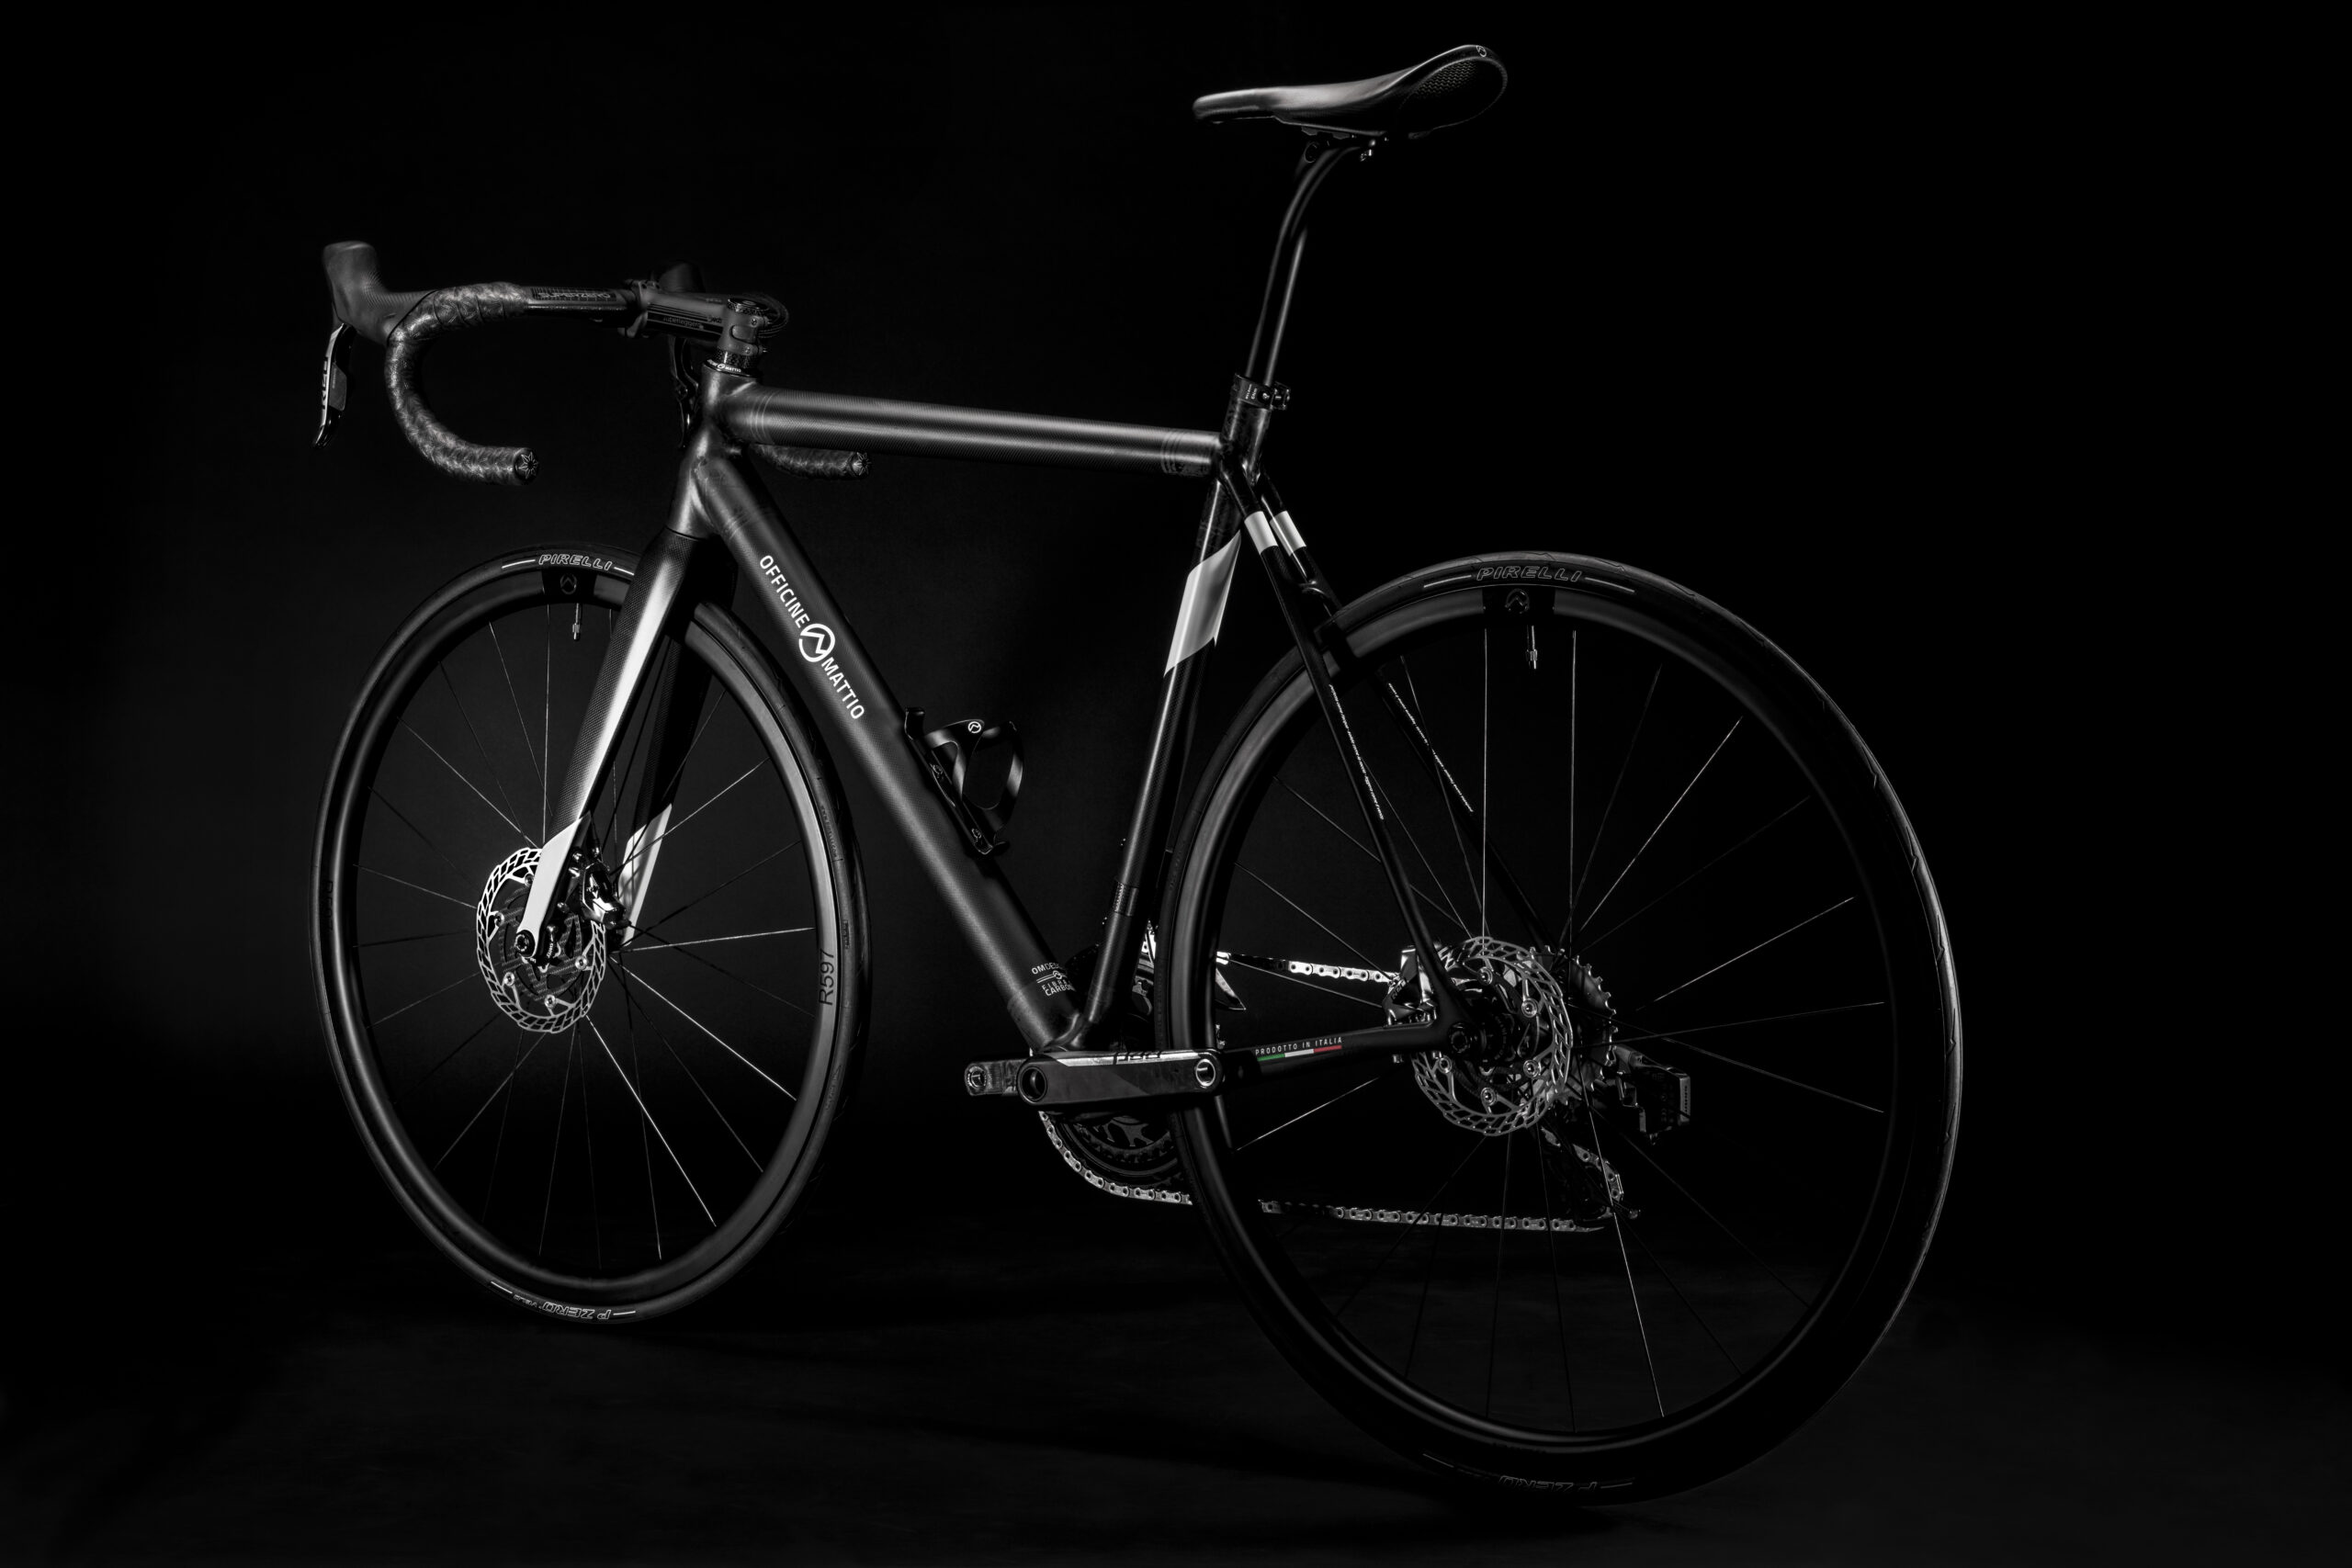 Bicicletta Officine Mattio modello SL DISC, produzione made in italy in fibra di carbonio, fotografia dettaglio laterale